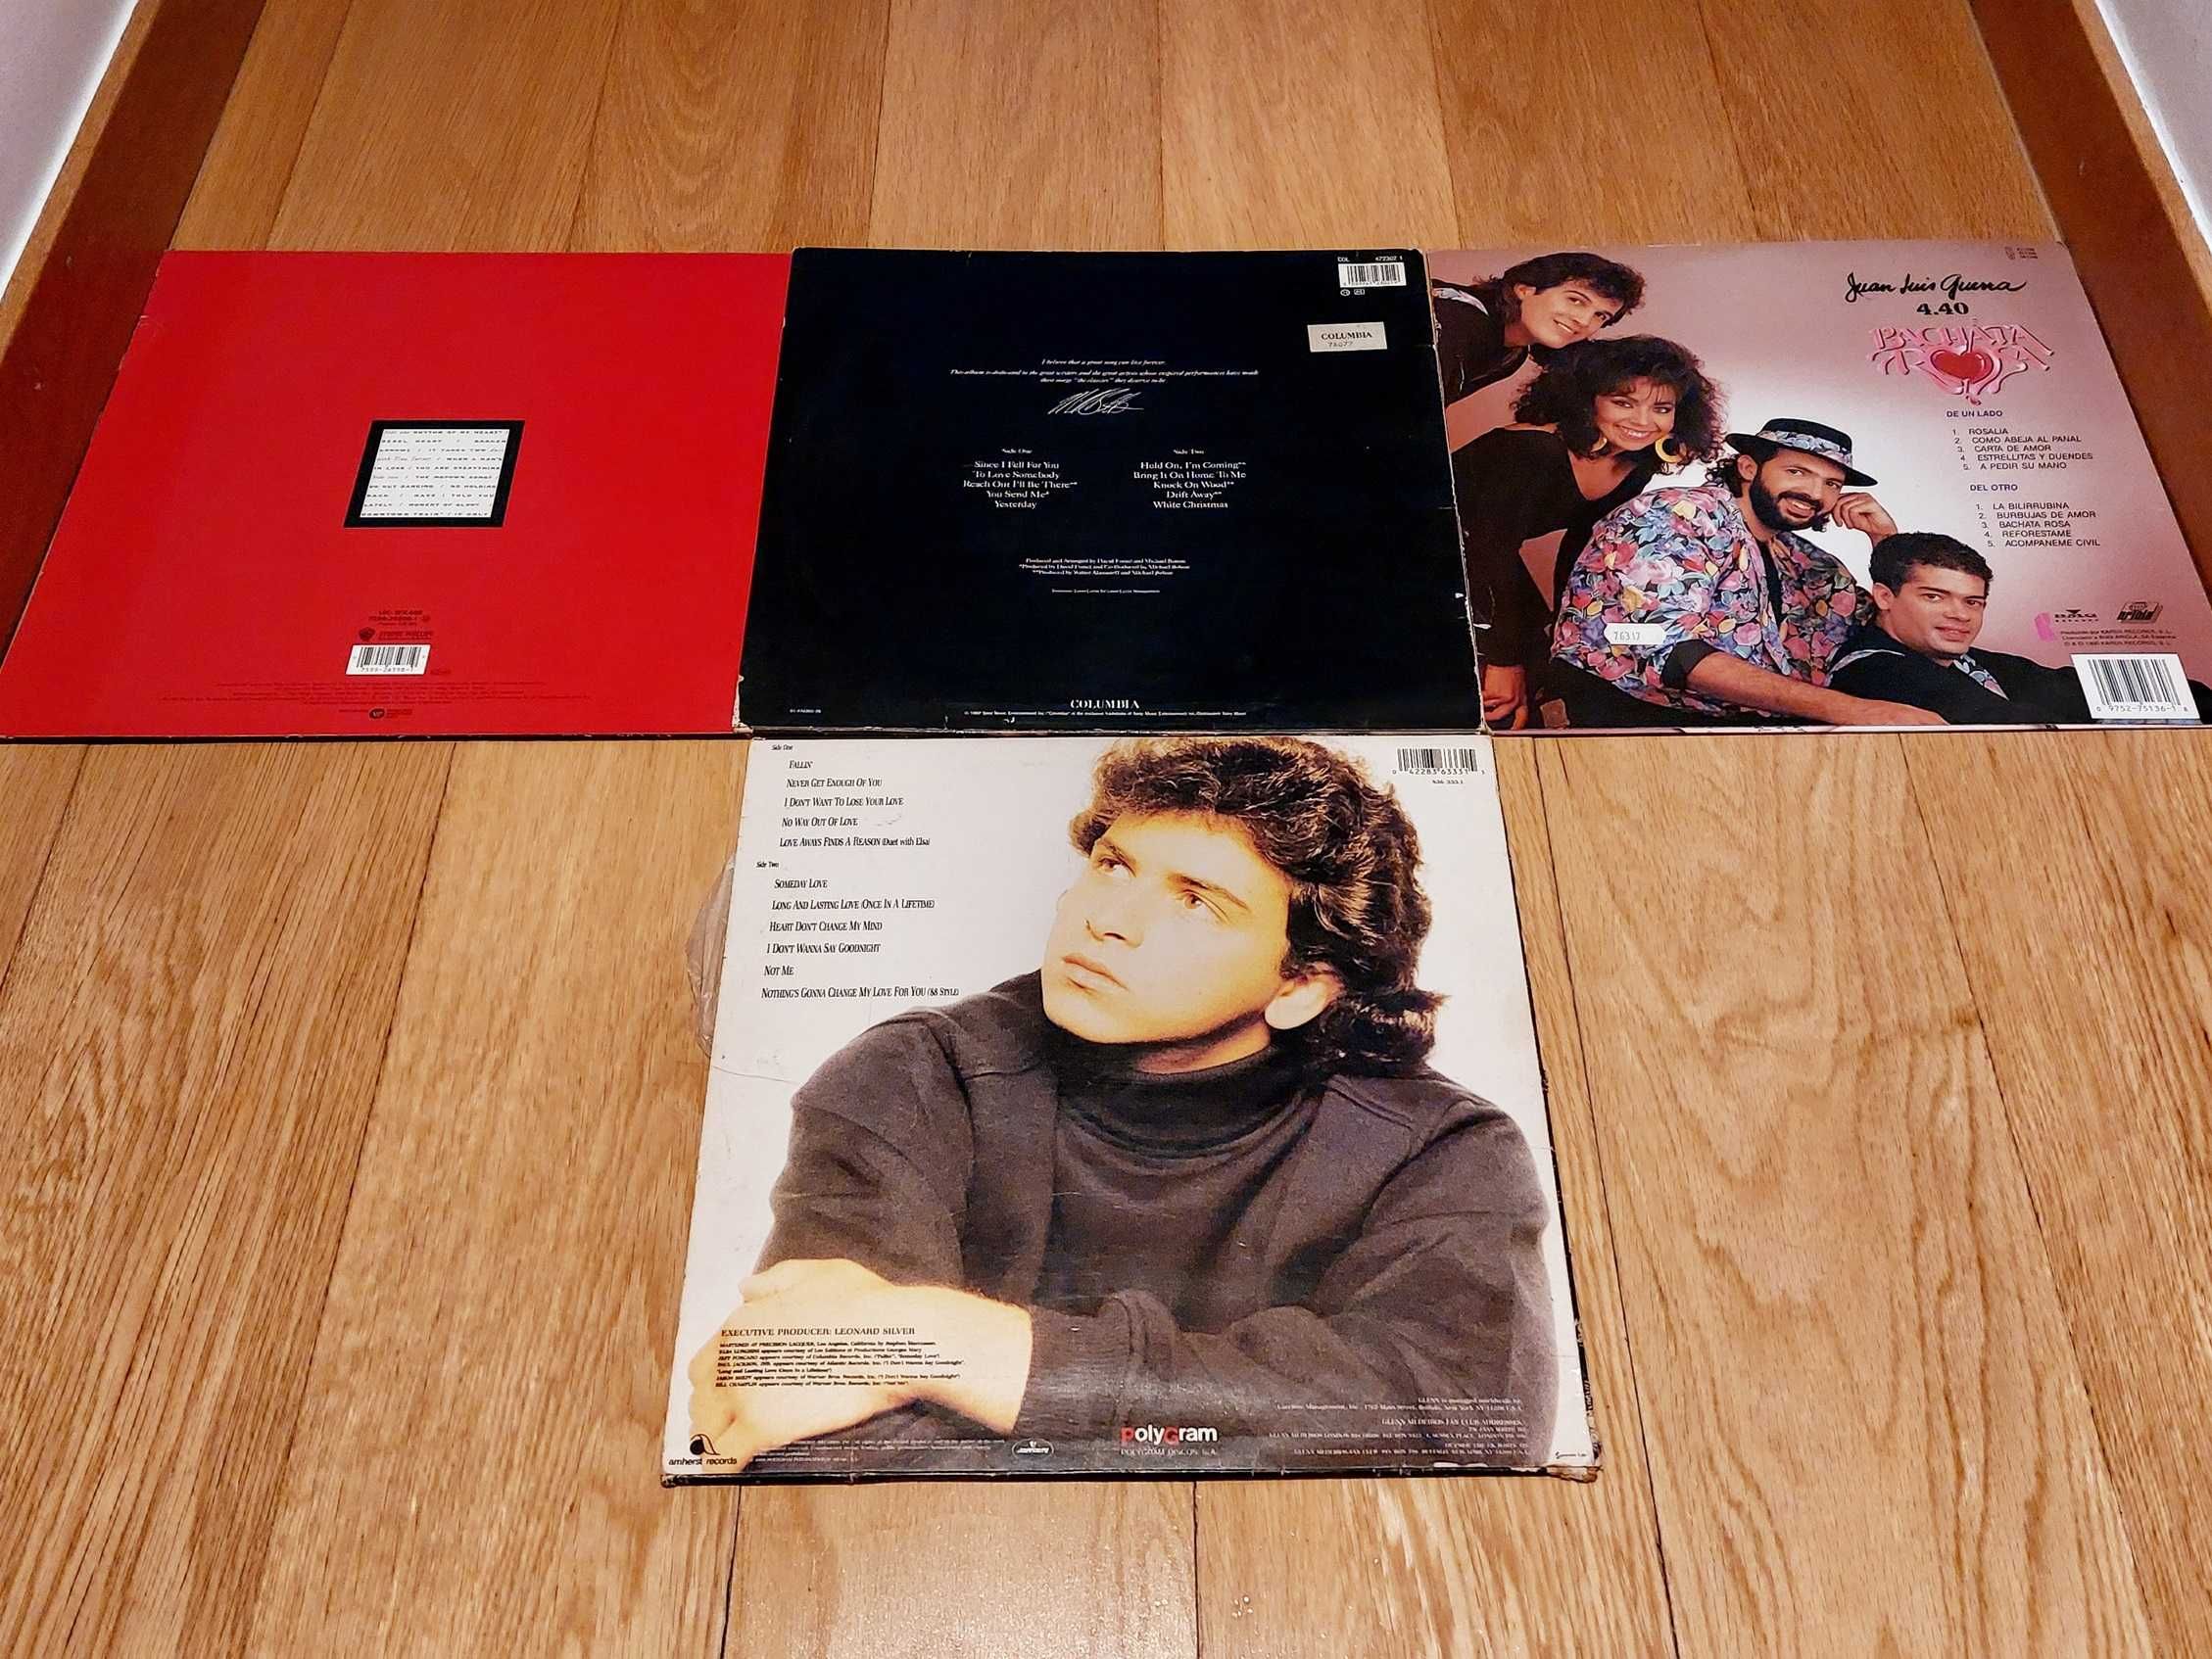 Discos Vinil - LPs anos 80-90 (desde 15€)